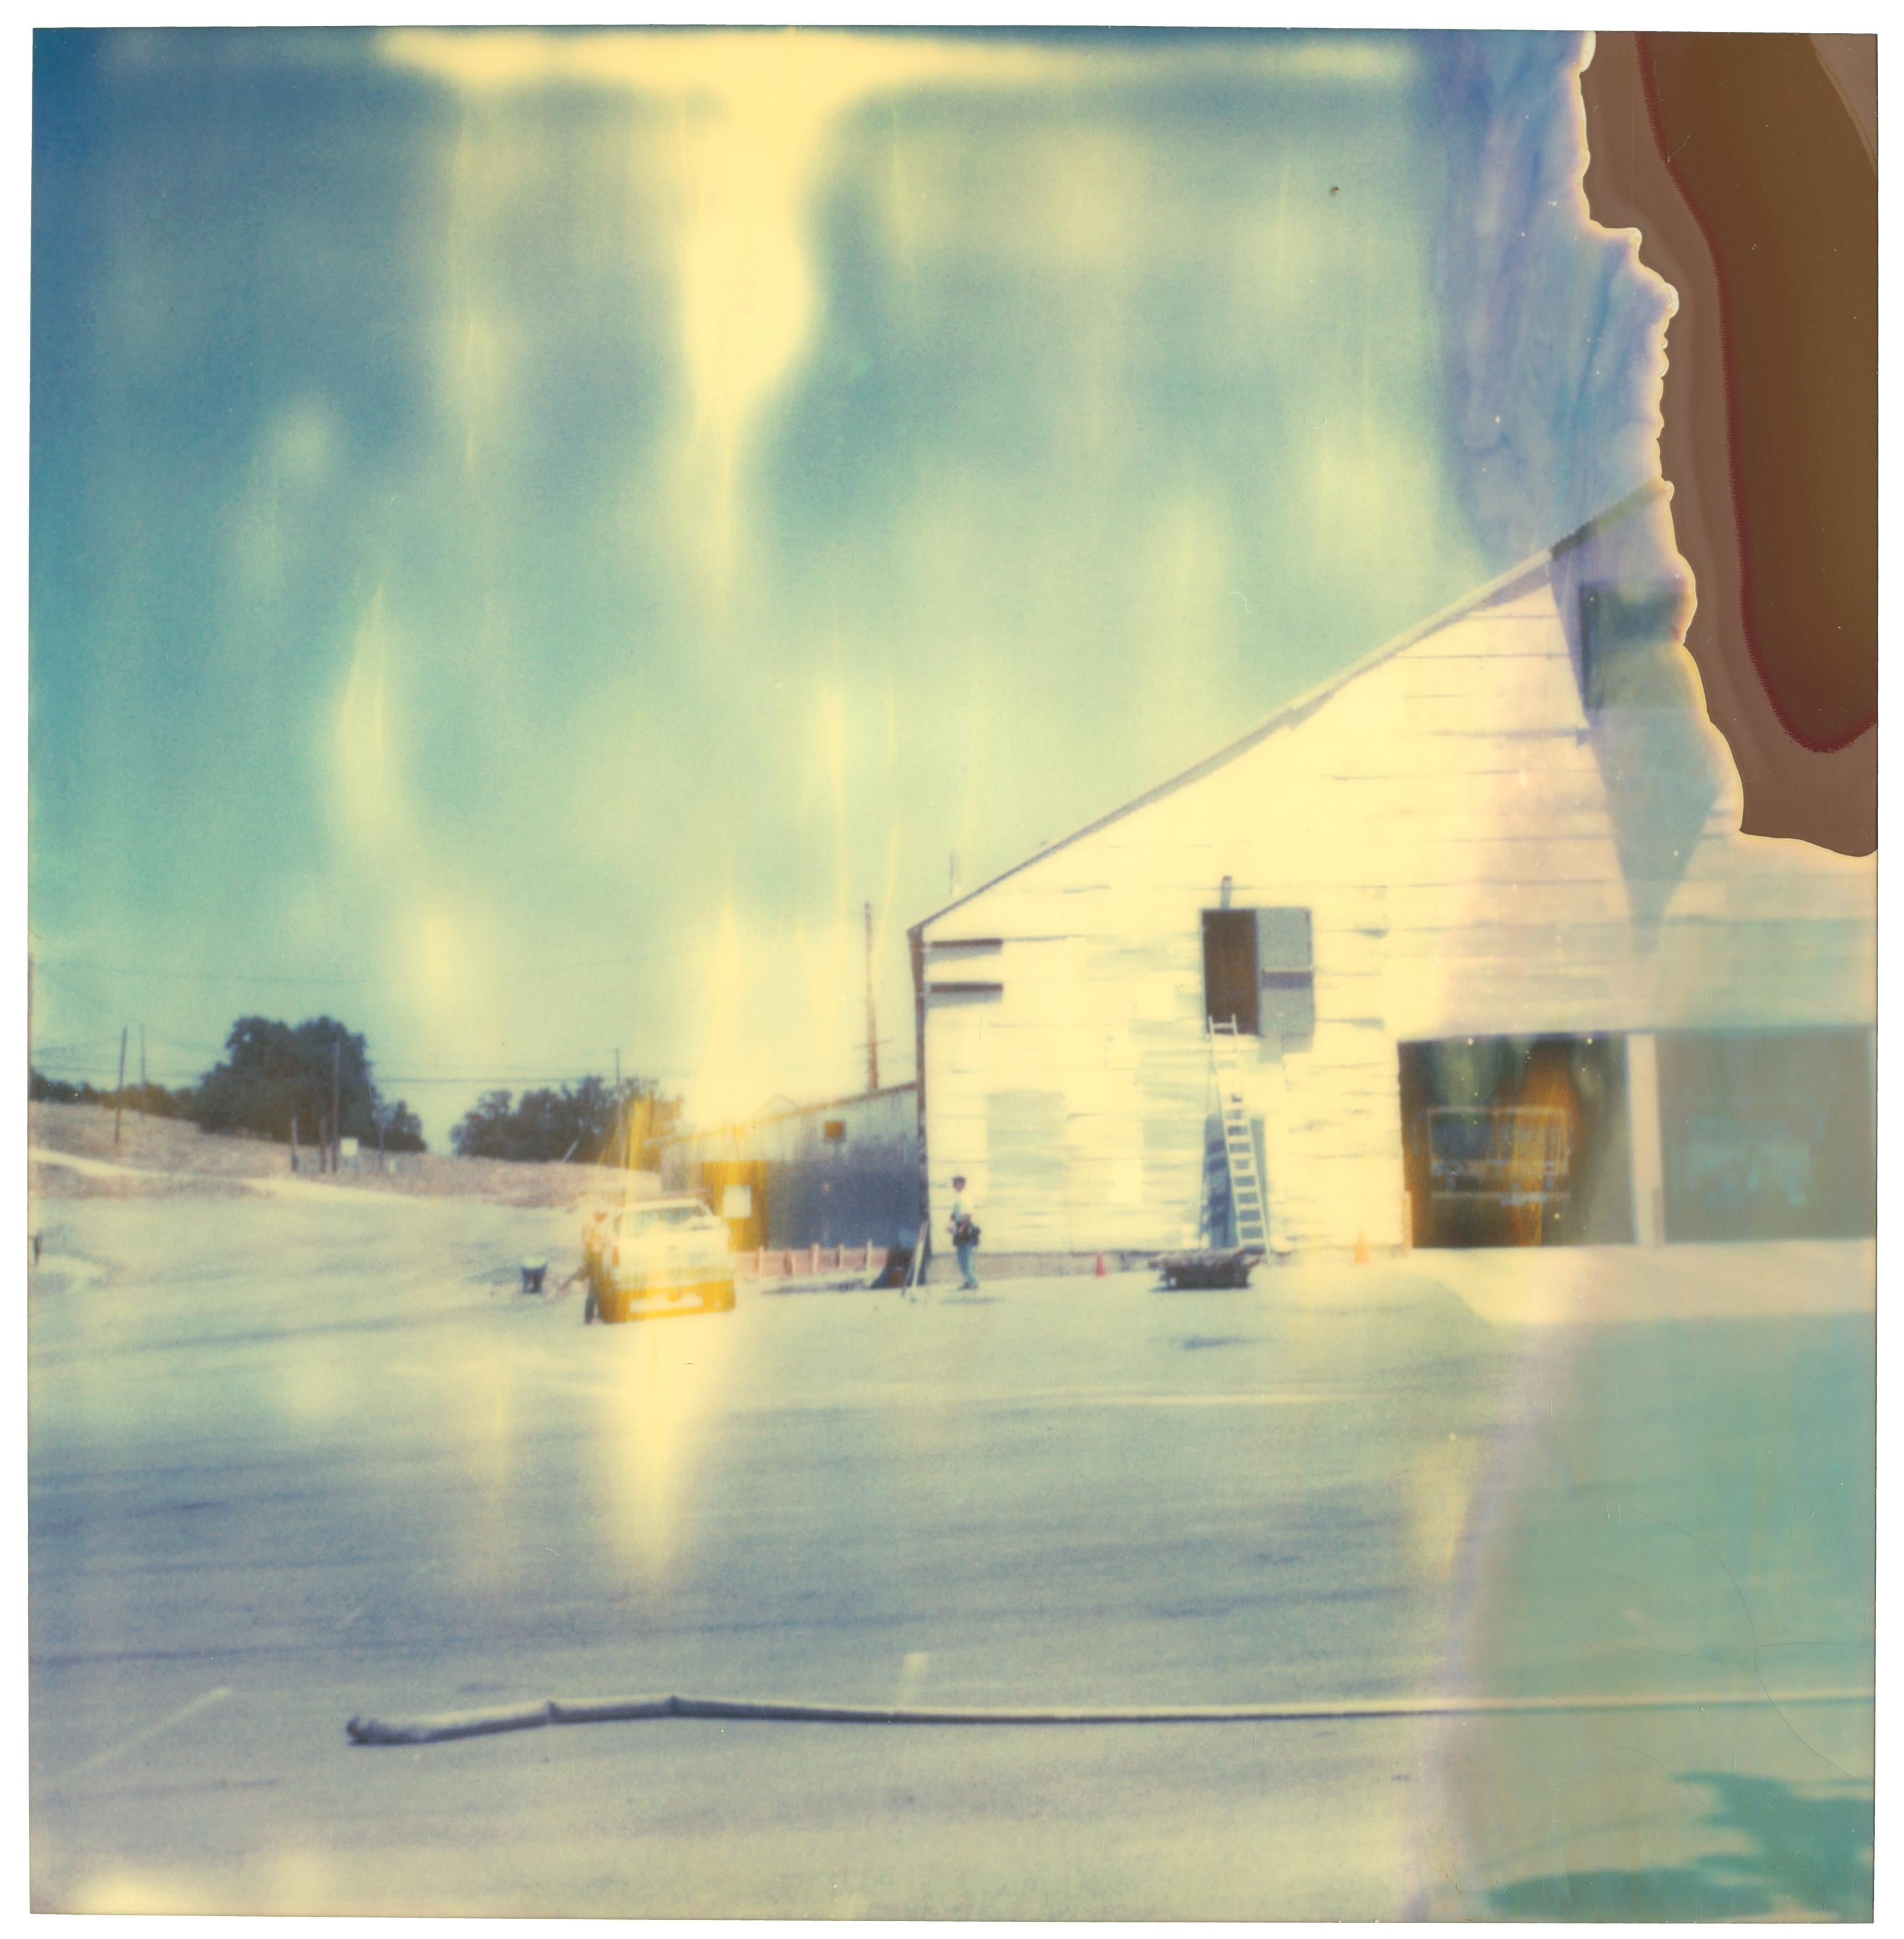 Stefanie Schneider Landscape Photograph - On the Way to Big Sur (The Last Picture Show) - 21st Century, Polaroid, Color